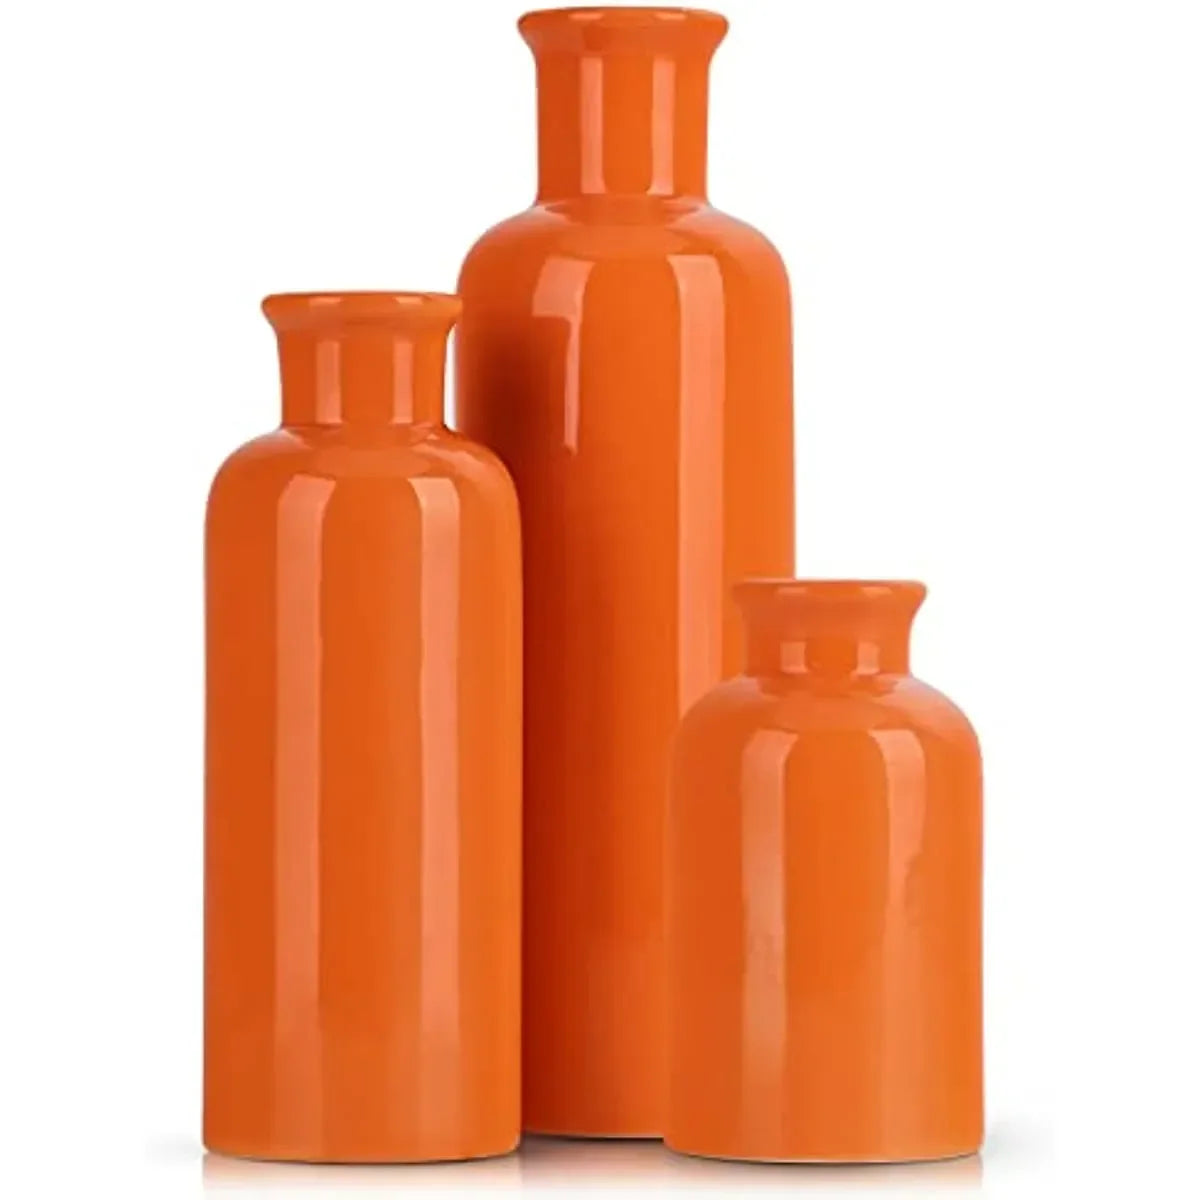 Orange keramisk vas uppsättning för 3 moderna minimalistiska dekor Boho vaser bondgård heminredning accenter vardagsrum mittpunkter